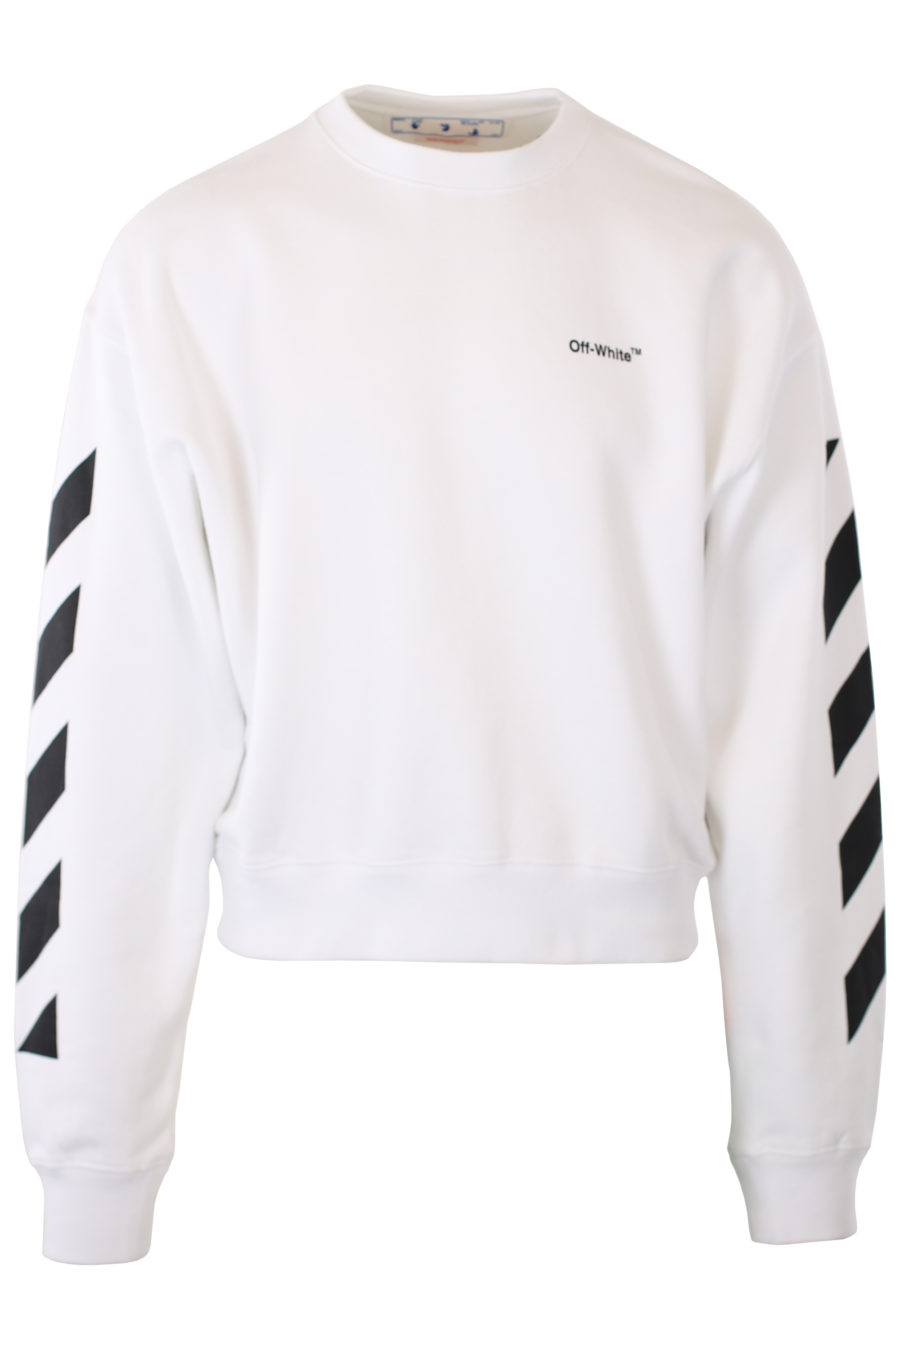 Weißes Sweatshirt mit Logo und diagonalen Streifen an den Ärmeln - IMG 2363